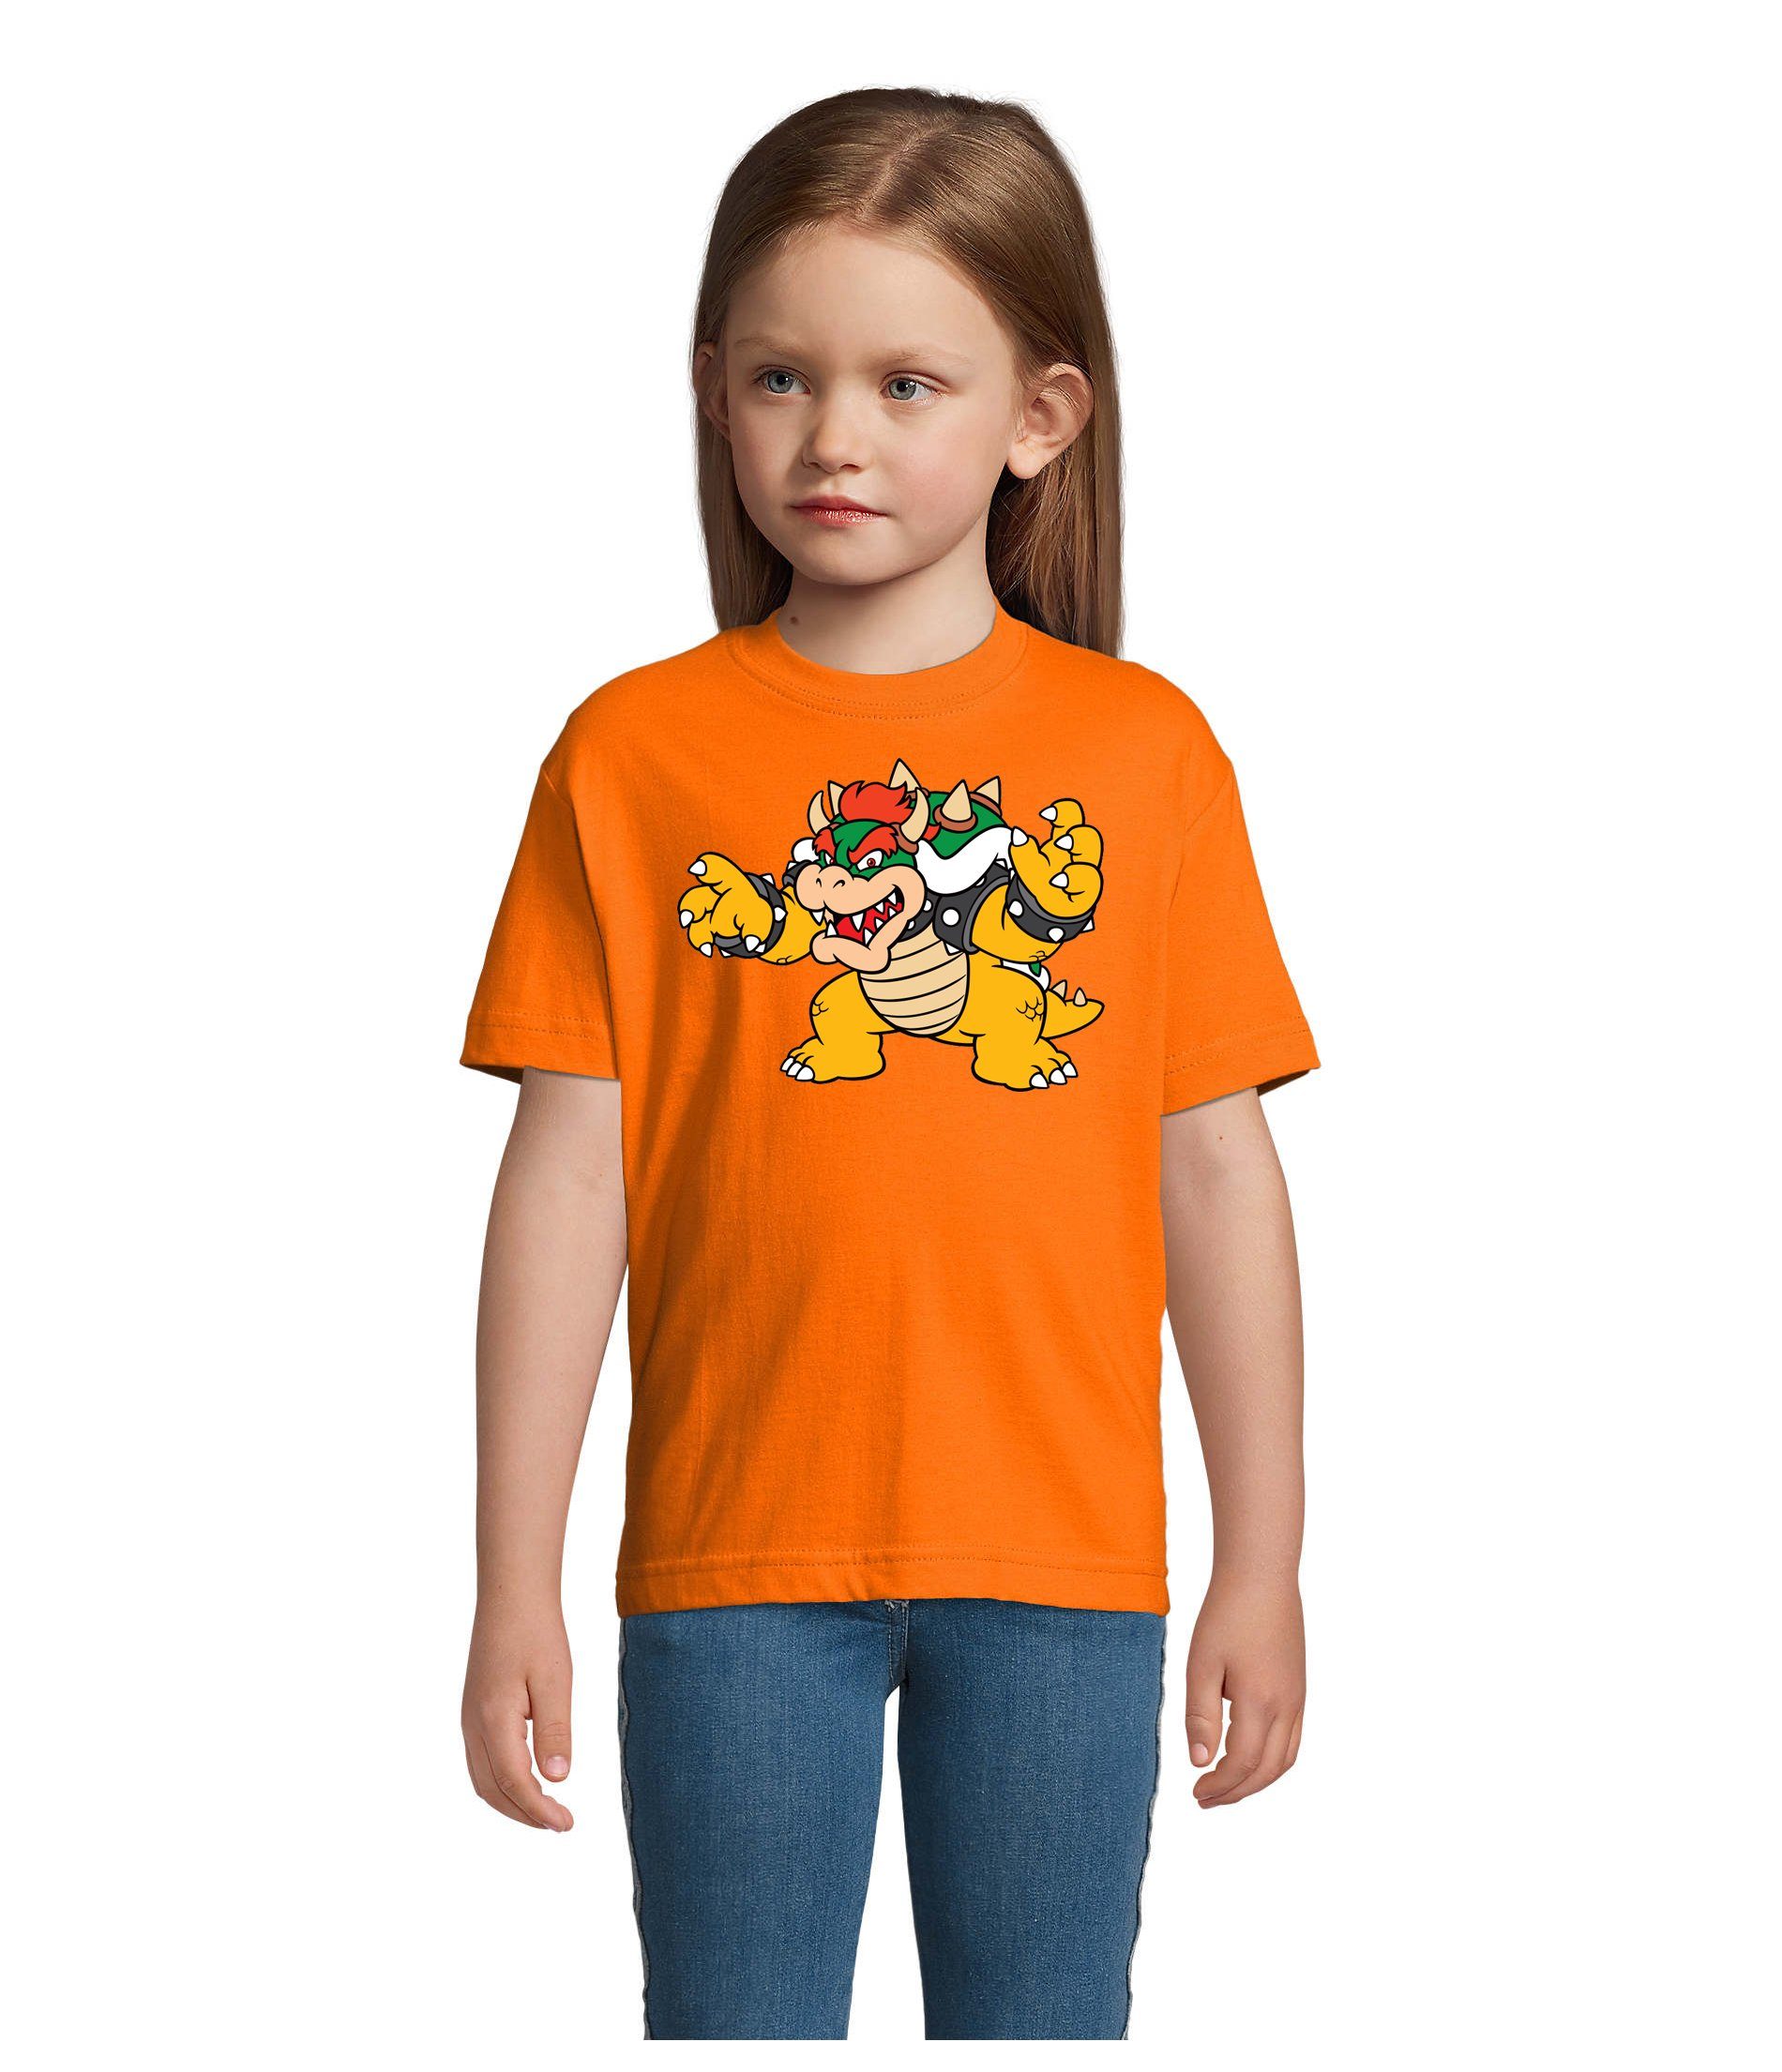 Blondie & Brownie T-Shirt Kinder Bowser Nintendo Mario Yoshi Luigi Game Gamer Konsole Orange